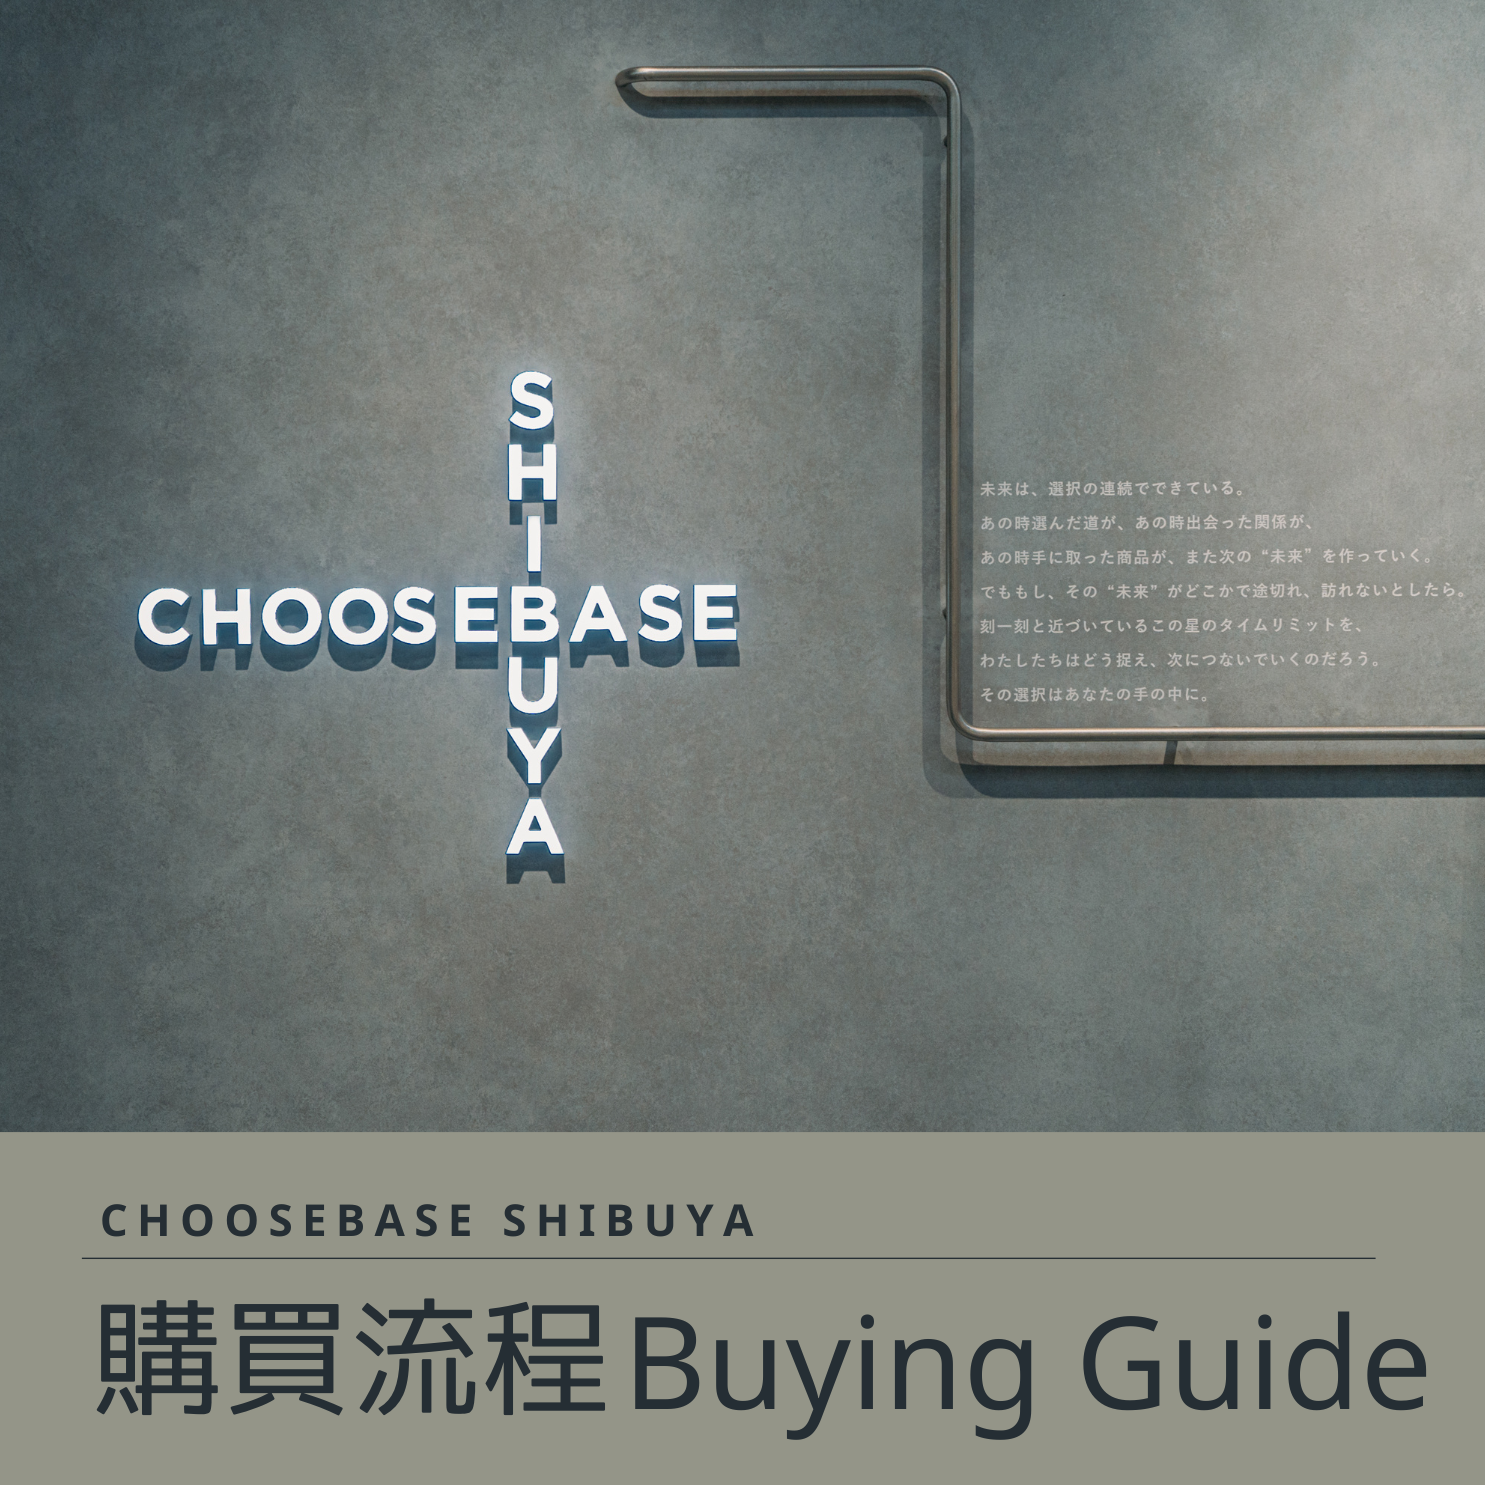 【體驗CHOOSEBASE SHIBUYA購物新模式】ーHow to Shop in CHOOSEBASE SHIBUYAー 쇼핑방법のサムネイル